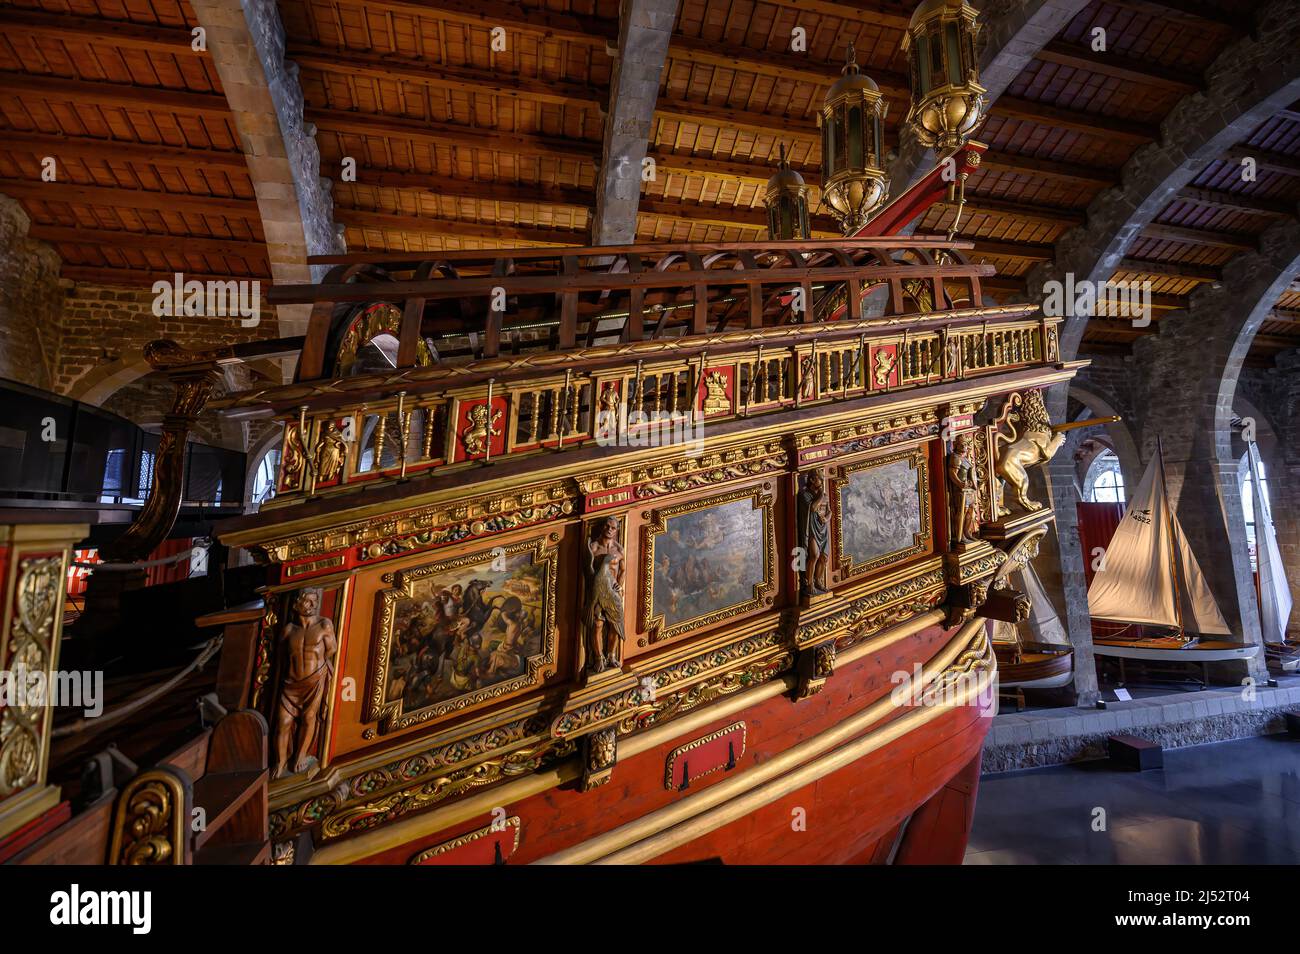 Barcelone, Espagne. Royal Galley navire dans le Musée maritime, construit dans les Drassanes Reals en 1568 Banque D'Images